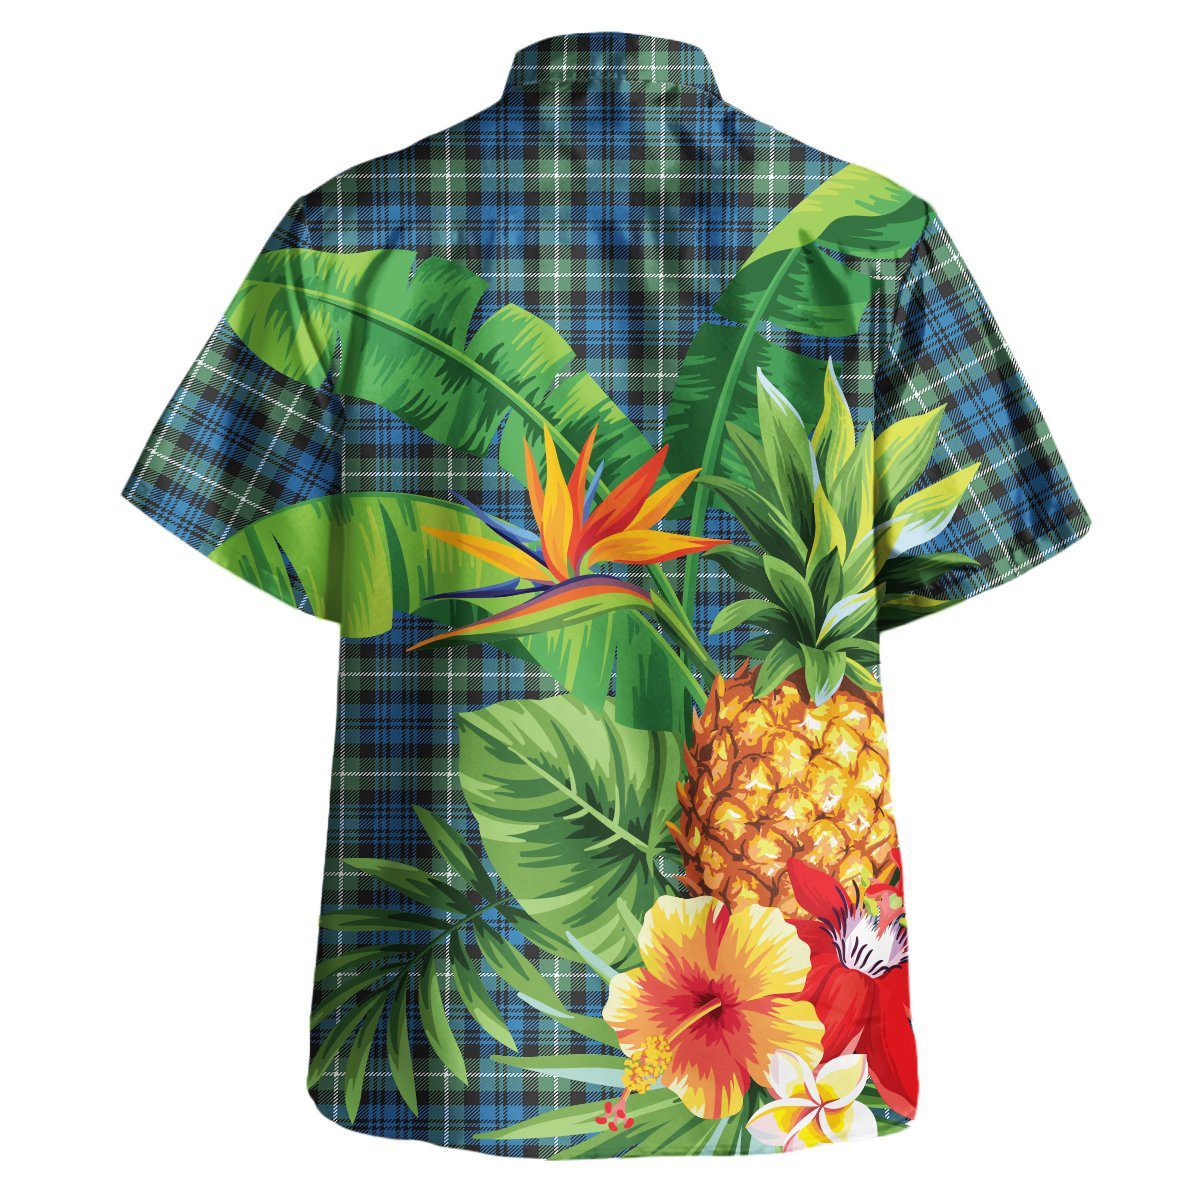 Lamont Ancient Tartan Aloha Shirt version 2